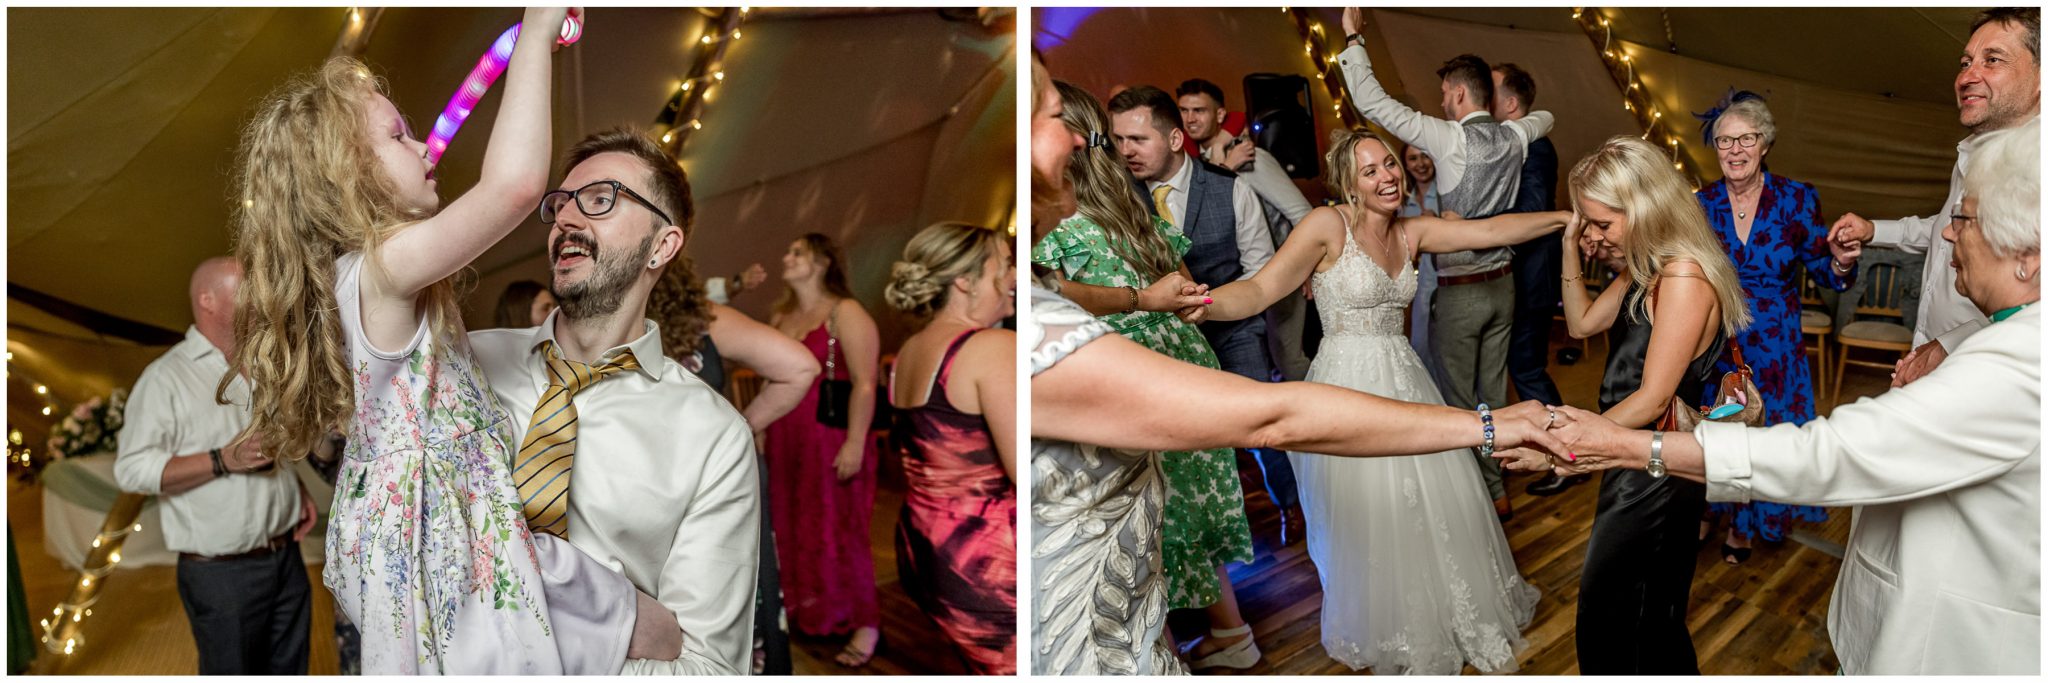 Wedding guests hit the dancefloor